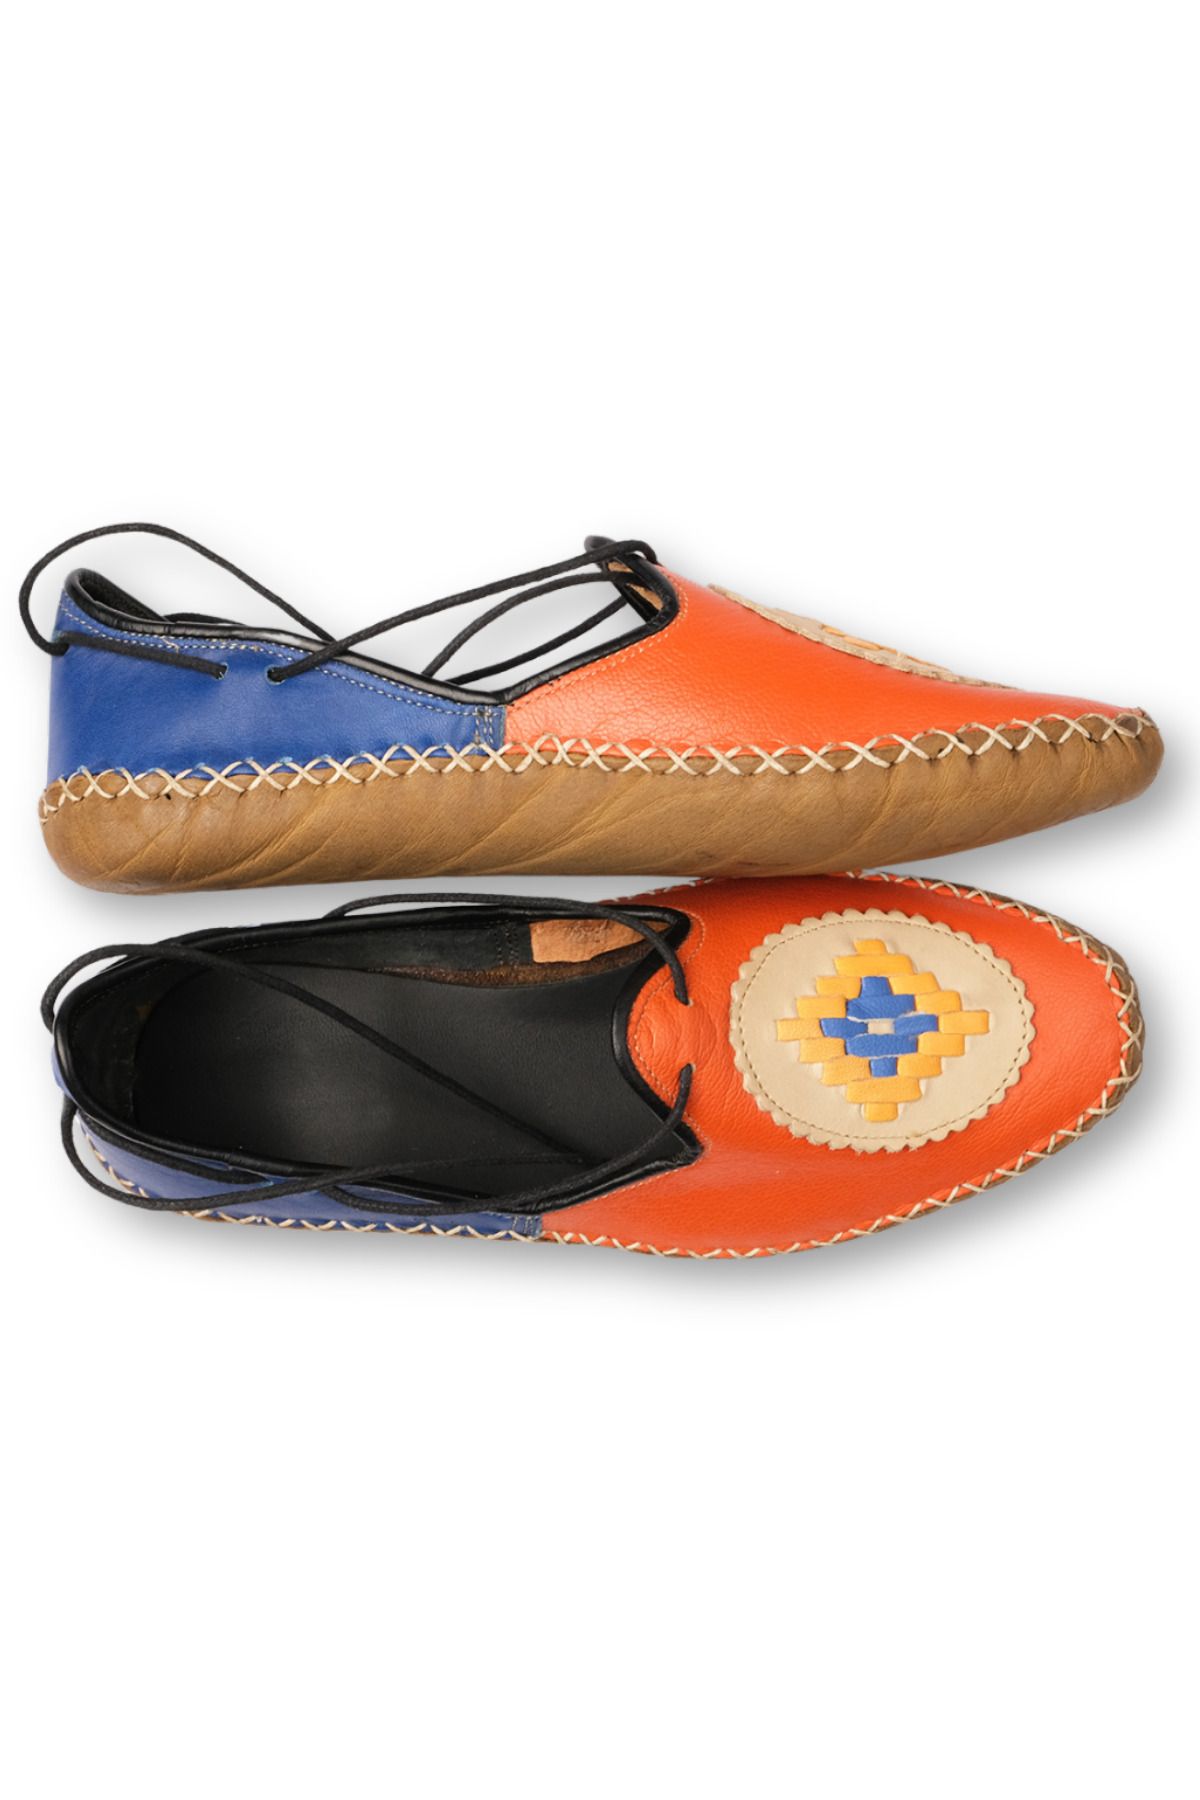 Atlas Handmade Shoes El Yapımı Hakiki Deri Çarık Model Kadın Turuncu Ayakkabı / Yemeni Ayakkabı / Babet